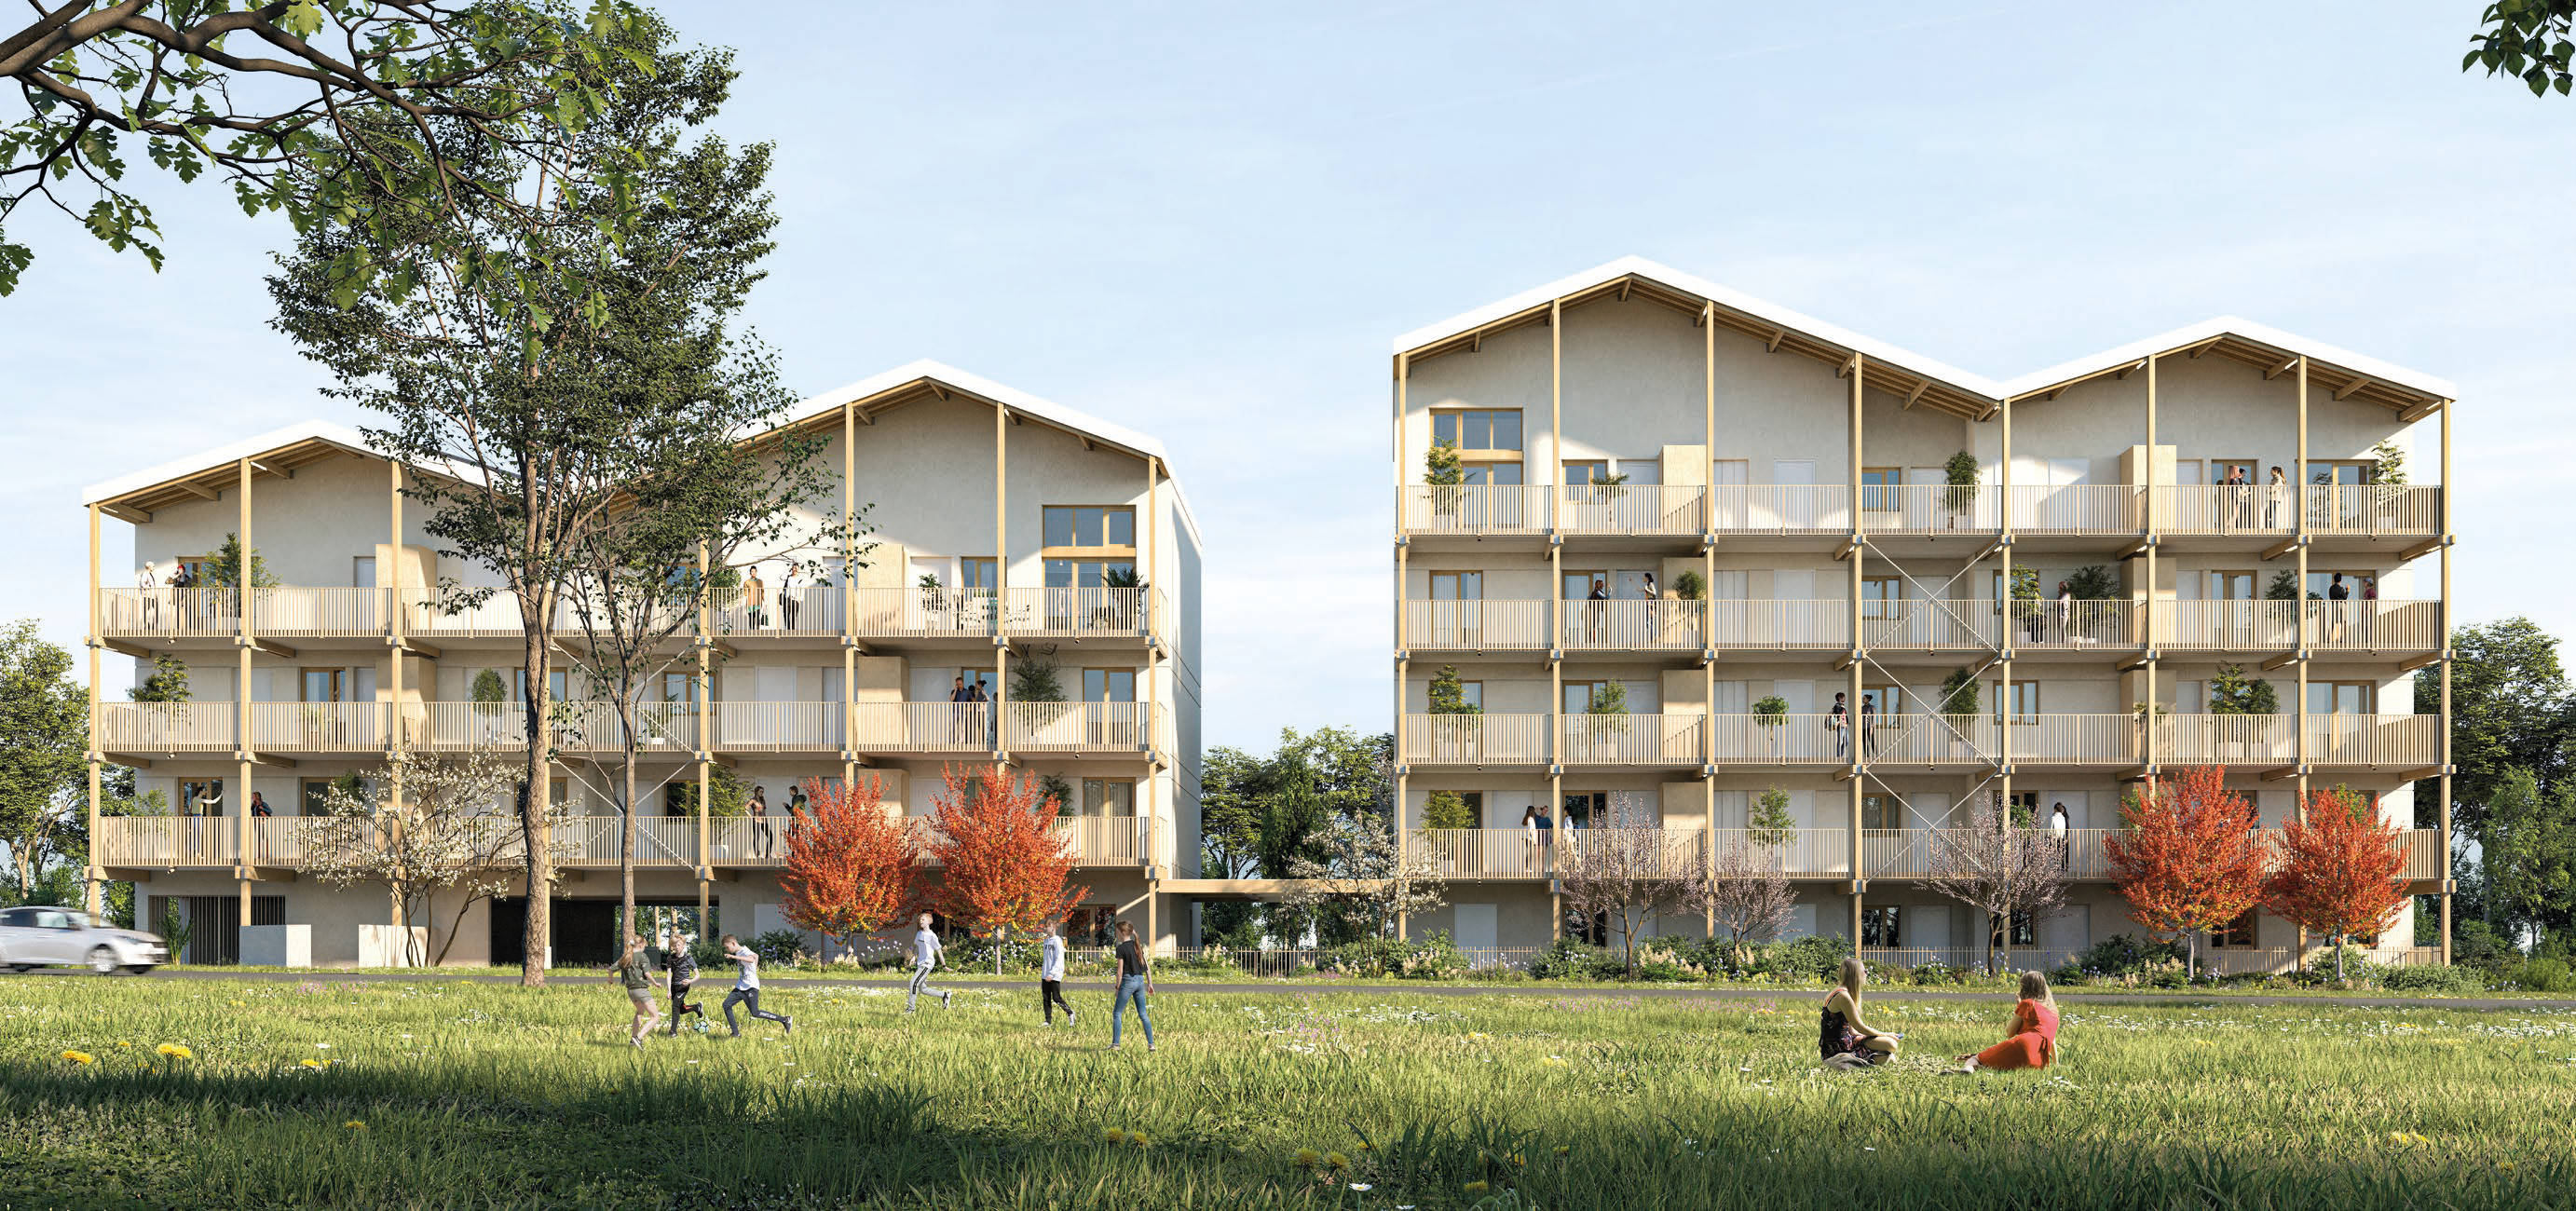 Programme immobilier neuf Villefranche-sur-Saône au coeur de l'éco quartier Montplaisir